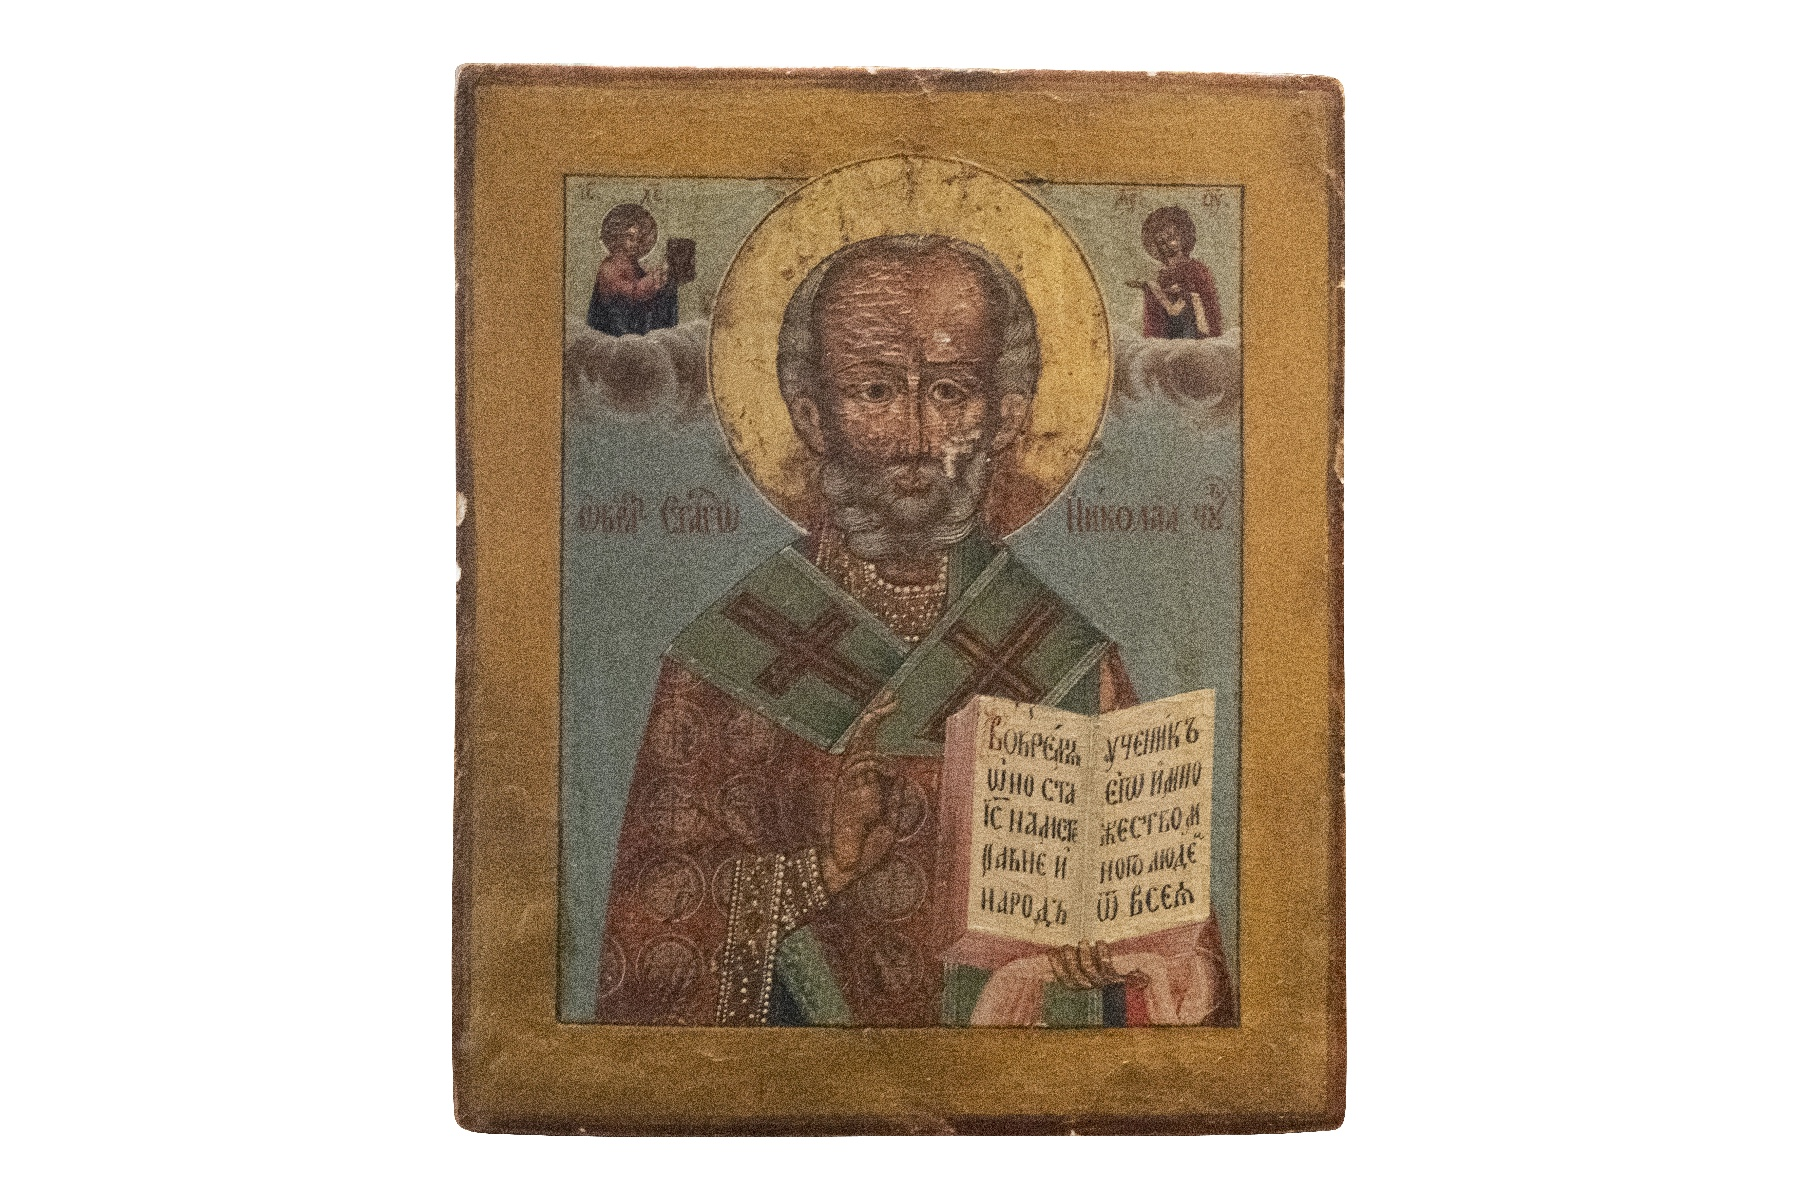 Russische Ikone Heiliger mit aufgeschlagenem Buch | Russian Icon Saint with Book Opened